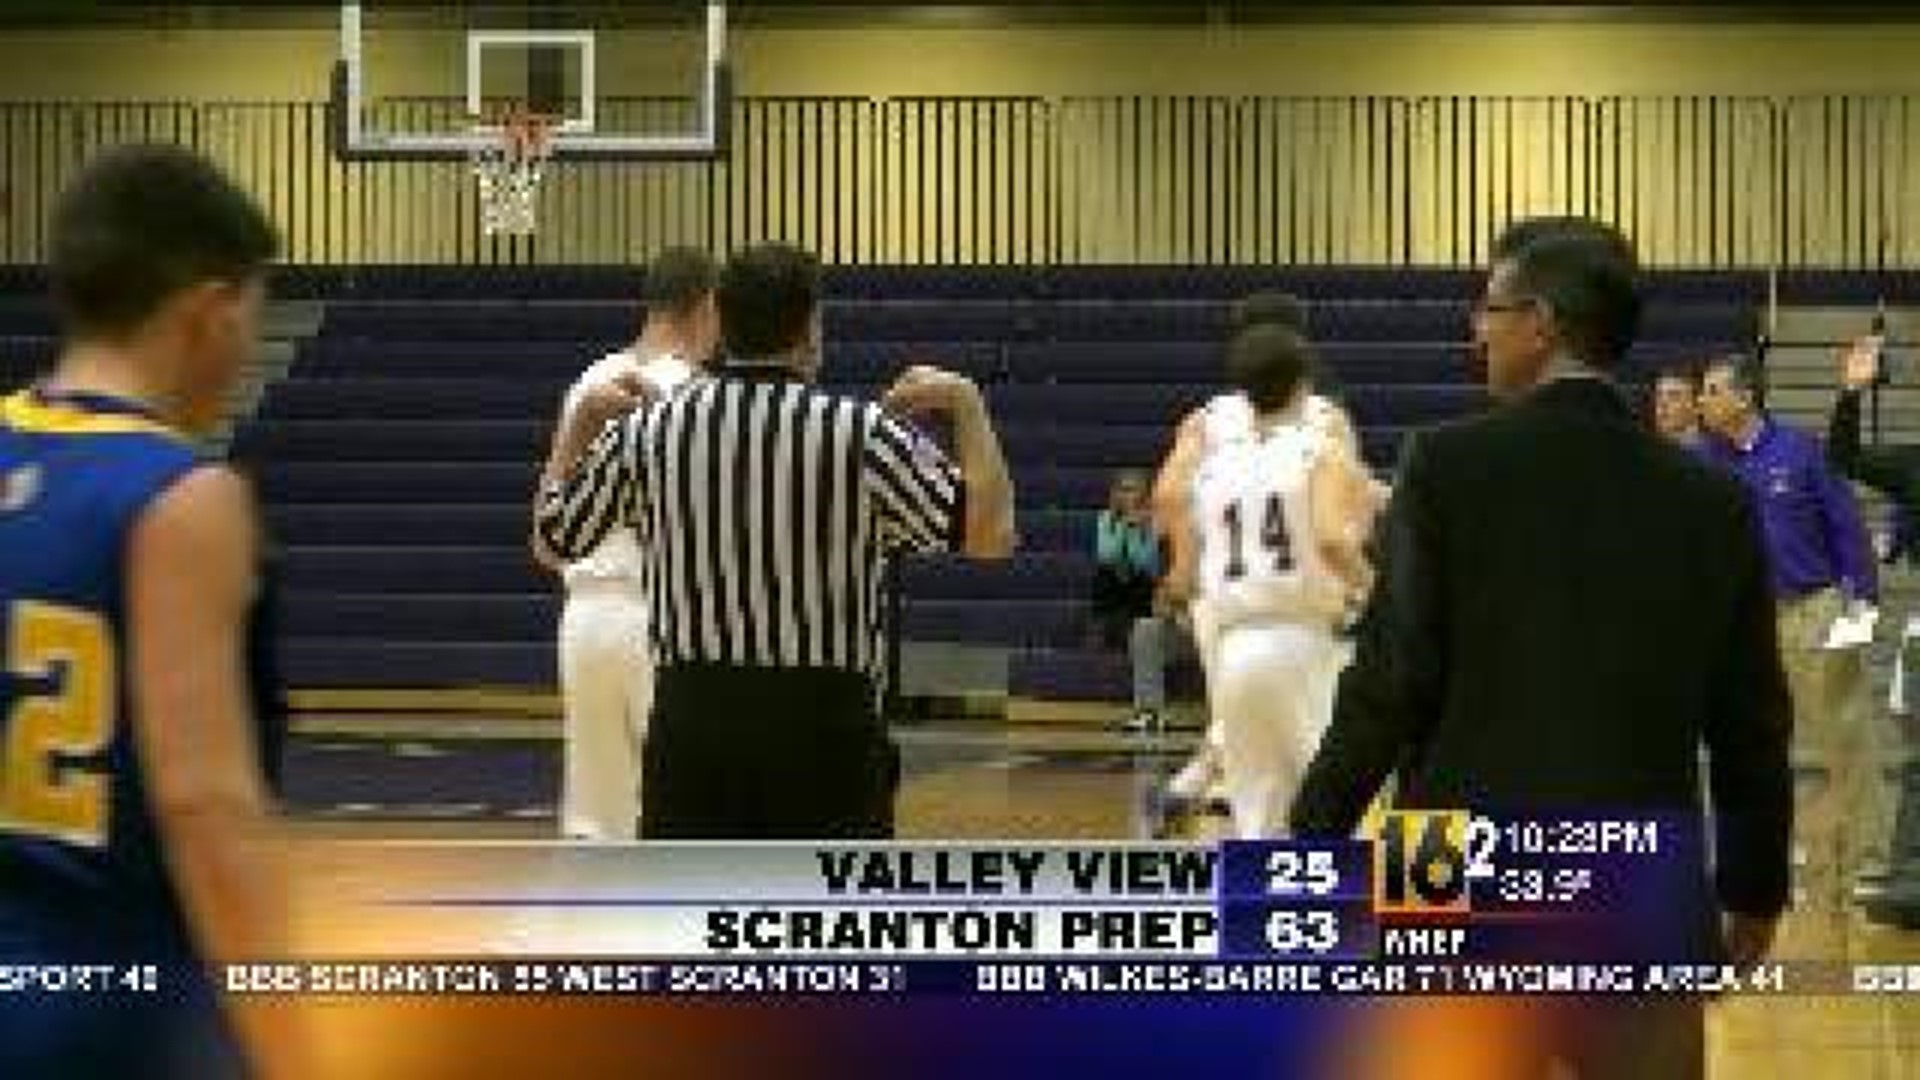 Scranton Prep vs Valley View